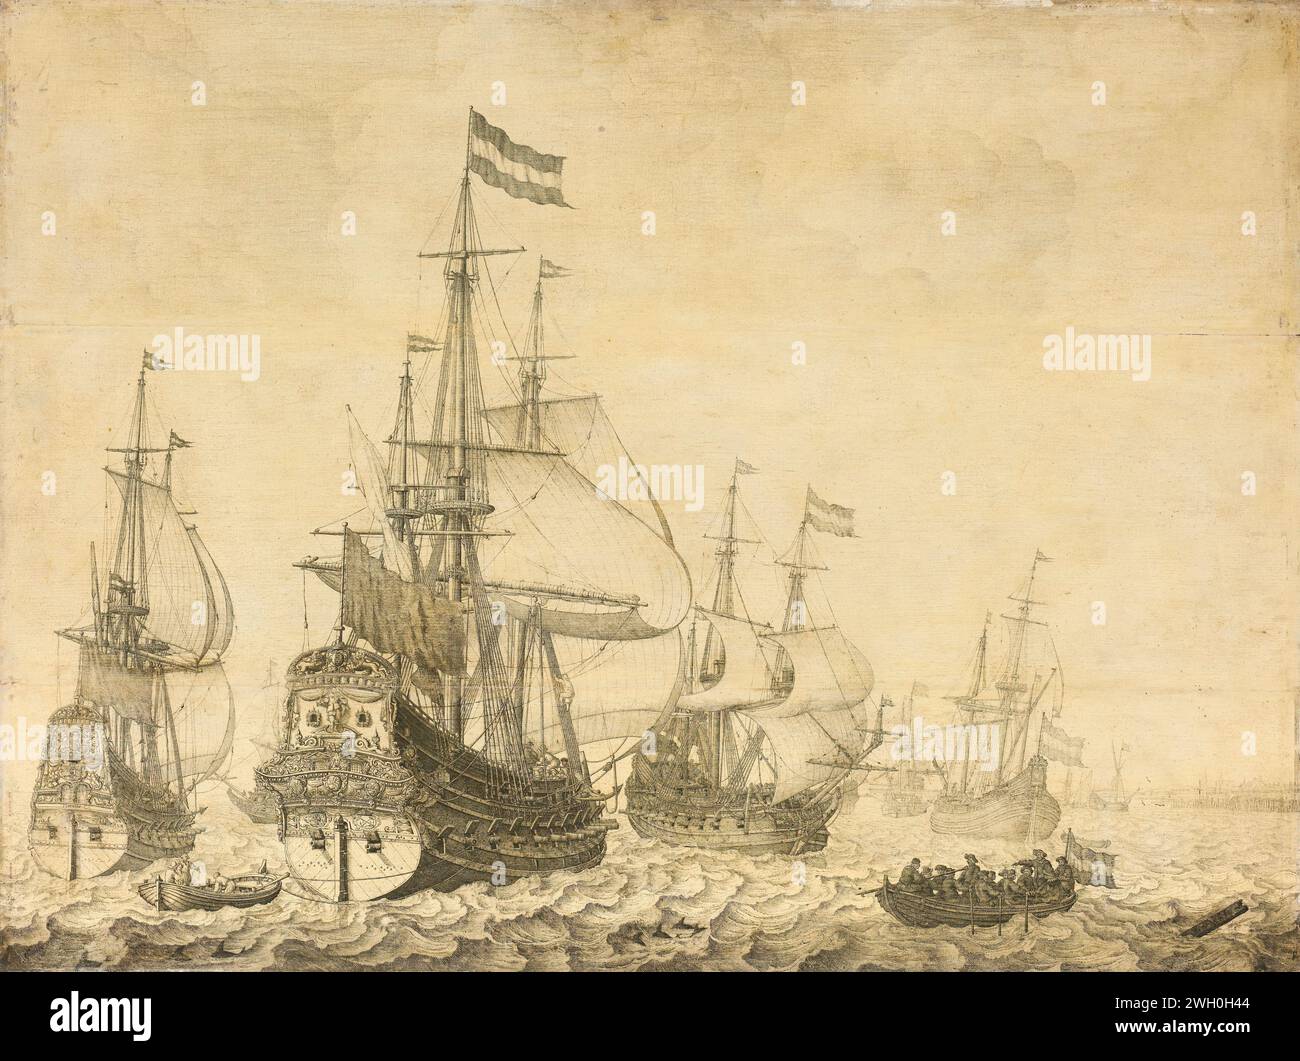 Paysage marin avec les hommes de guerre hollandais, y compris la «Drenthe» et le «Prince Frederick-Henry», Willem van de Velde (I), 1630 - 1670 peinture Seasing vue avec quelques navires de guerre hollandais, y compris la Drenthe et le Prince Frederick Hendrick, un sloop avec des marins sur la droite. panneau. encre marine. voilier, voilier Banque D'Images